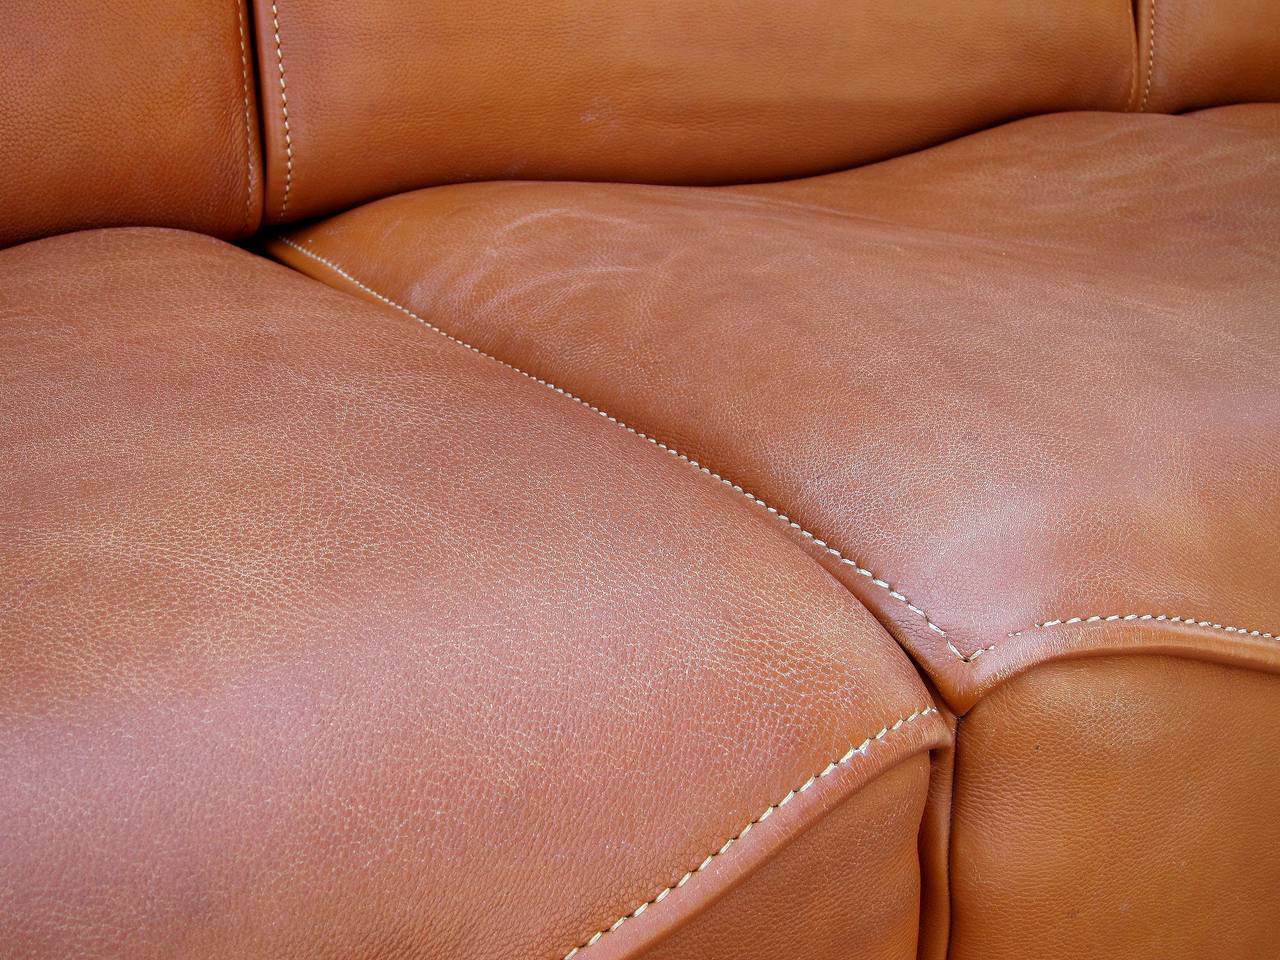 Late 20th Century Legendary De Sede Neck Leather Sofa 1960's